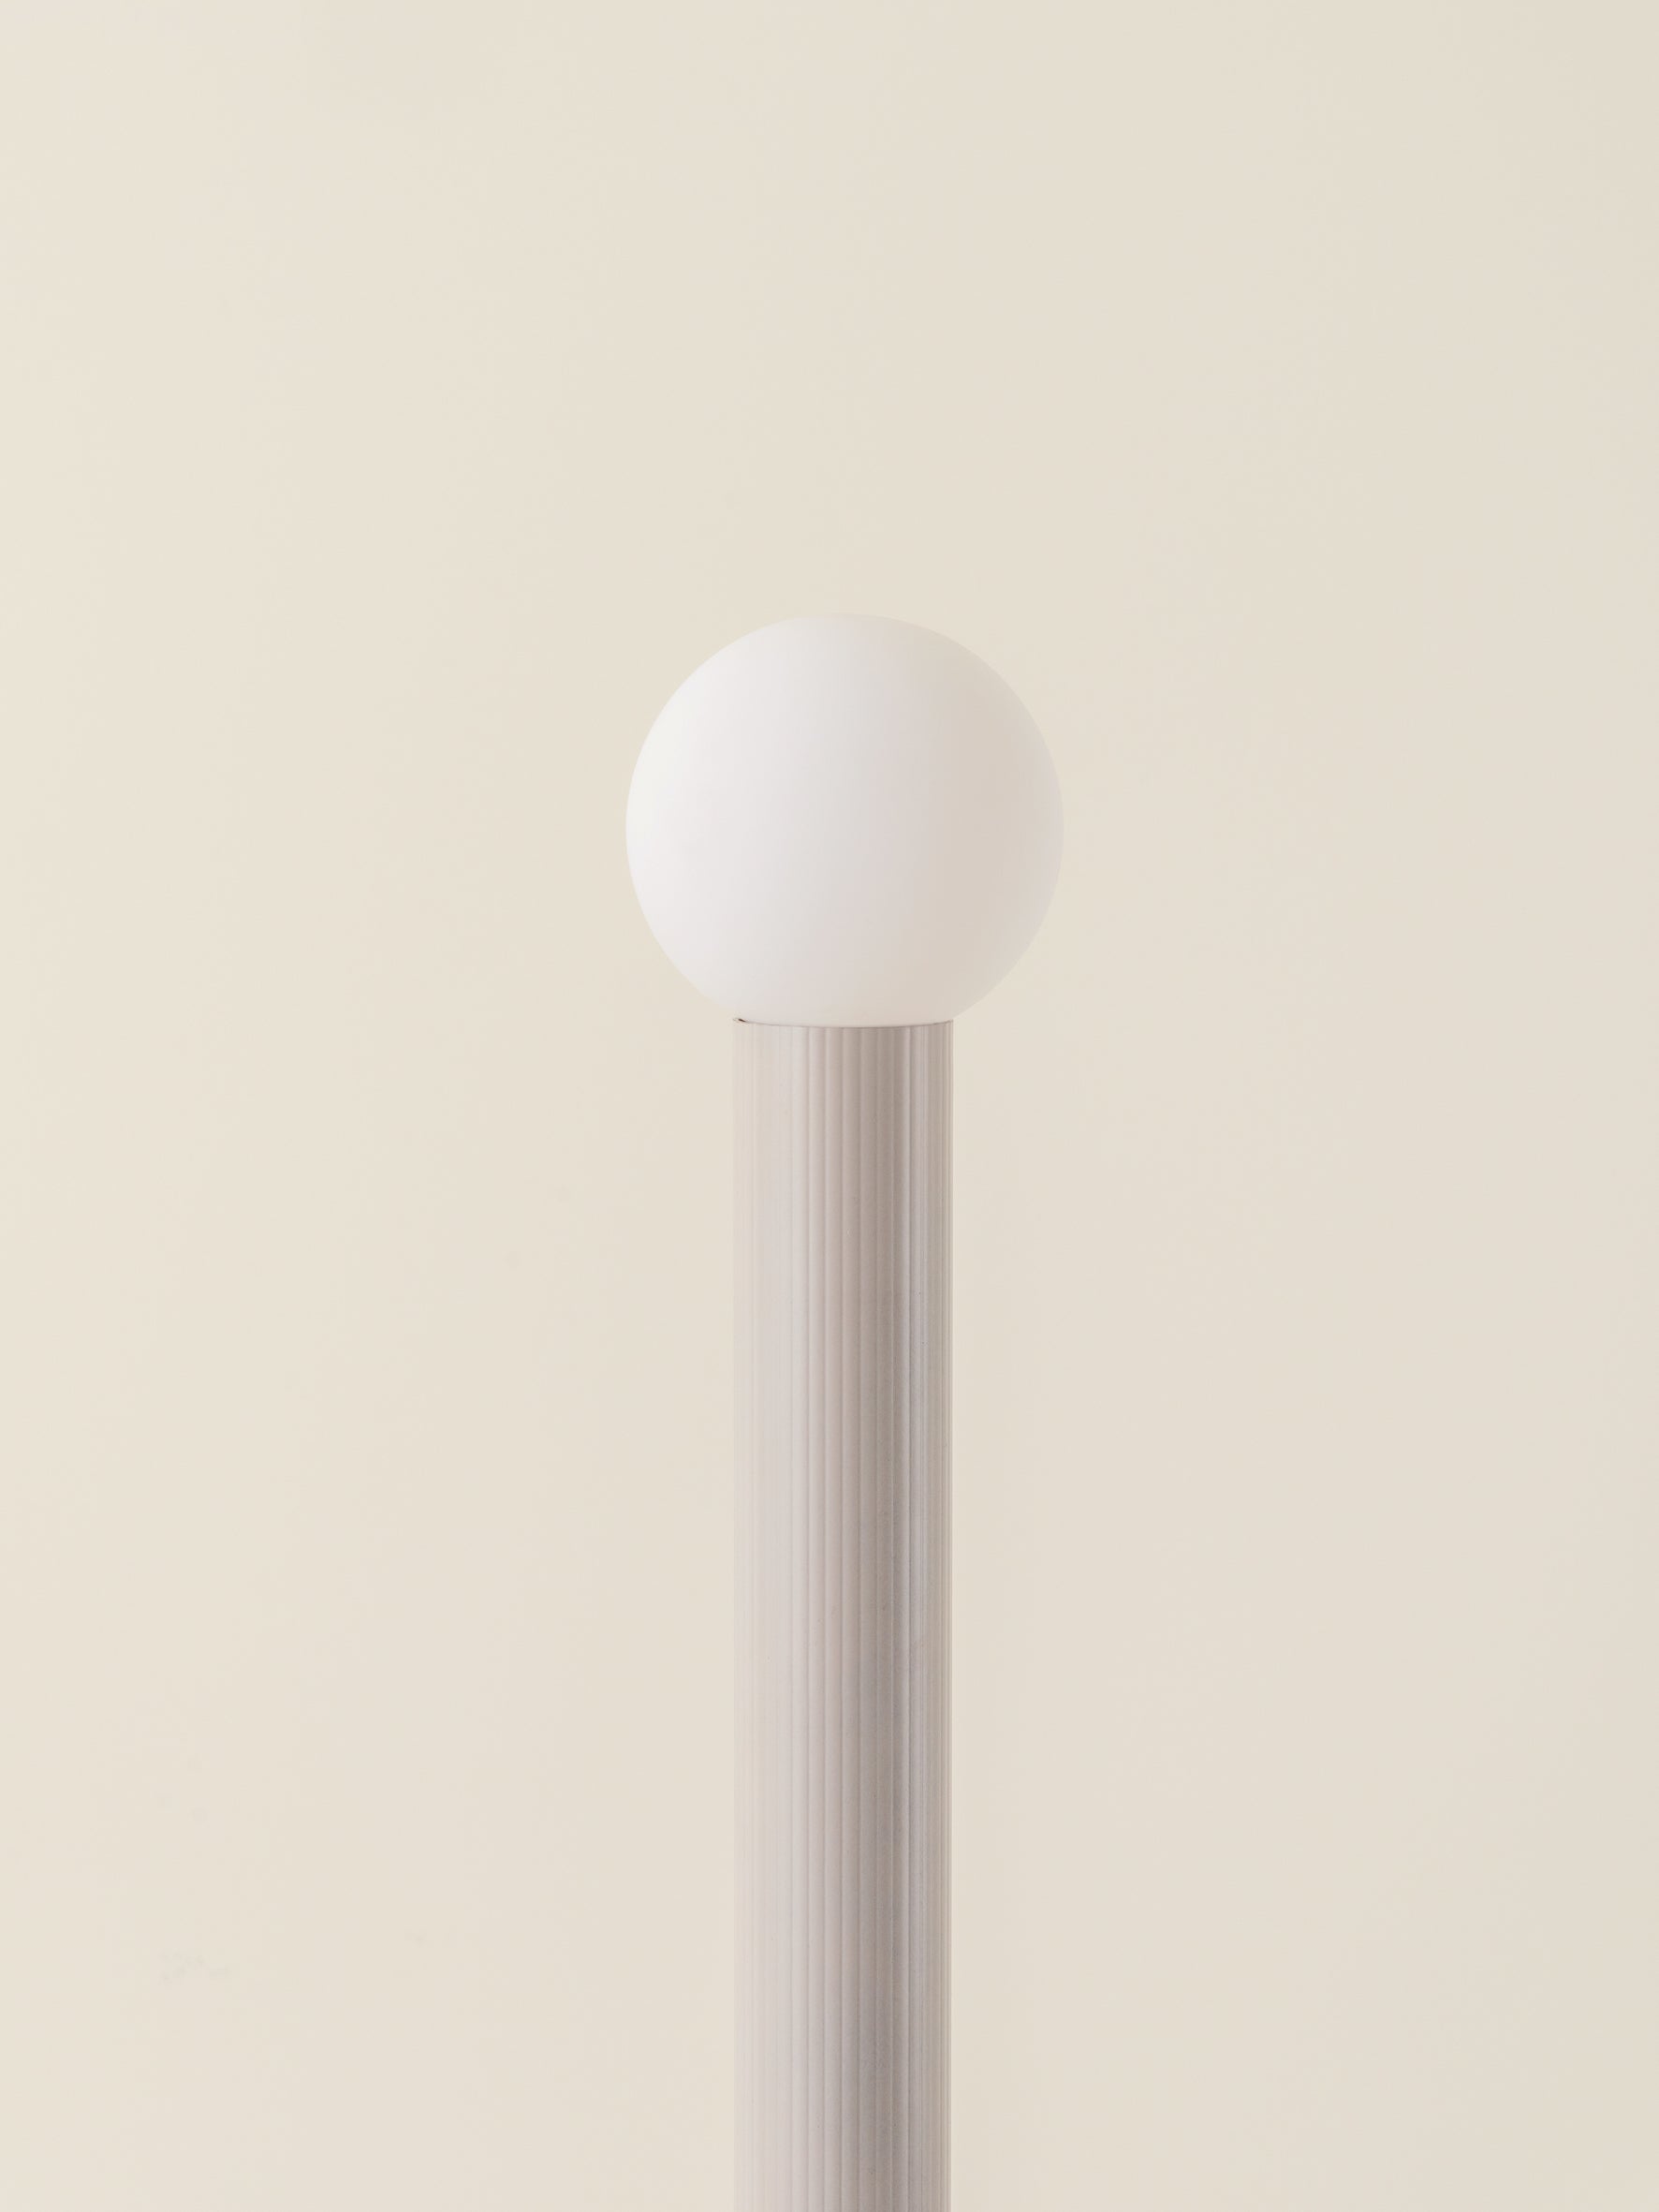 Chubes - 2 light warm white floor lamp | Floor Lamp | Lights & Lamps | UK | Modern Affordable Designer Lighting